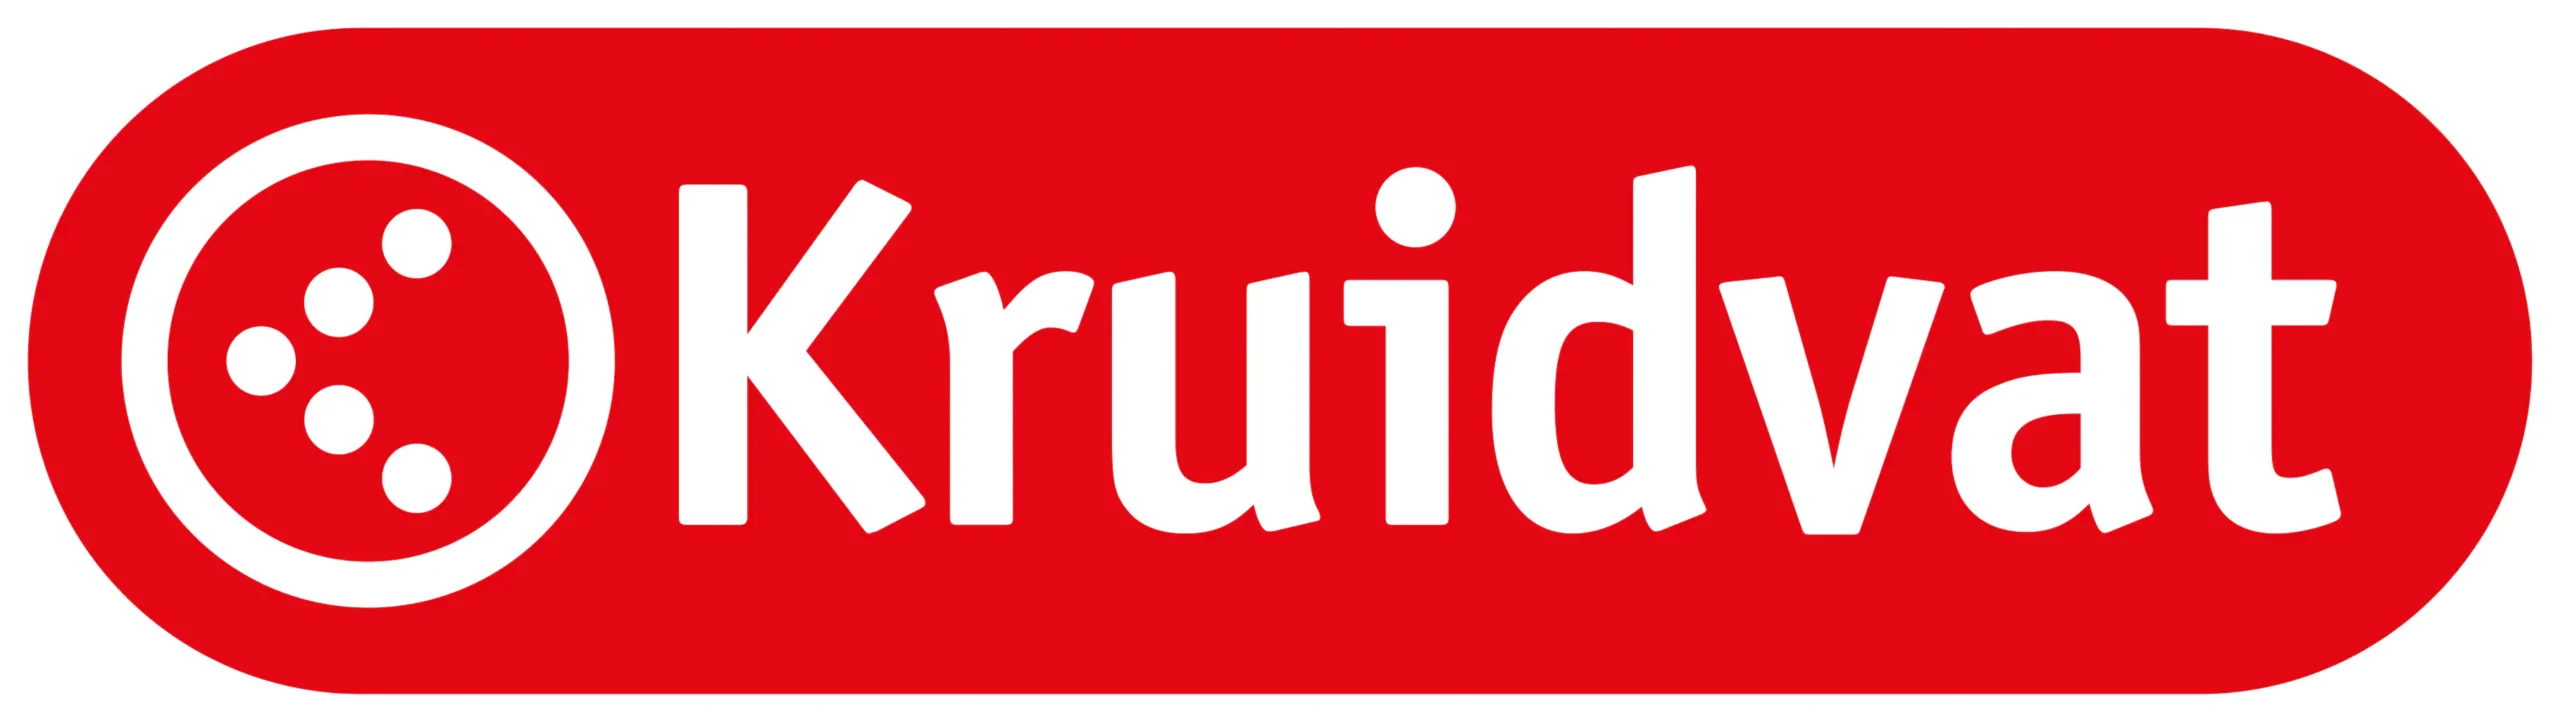 Logo-Kruidvat-2019-Rood-witte-outline-medium